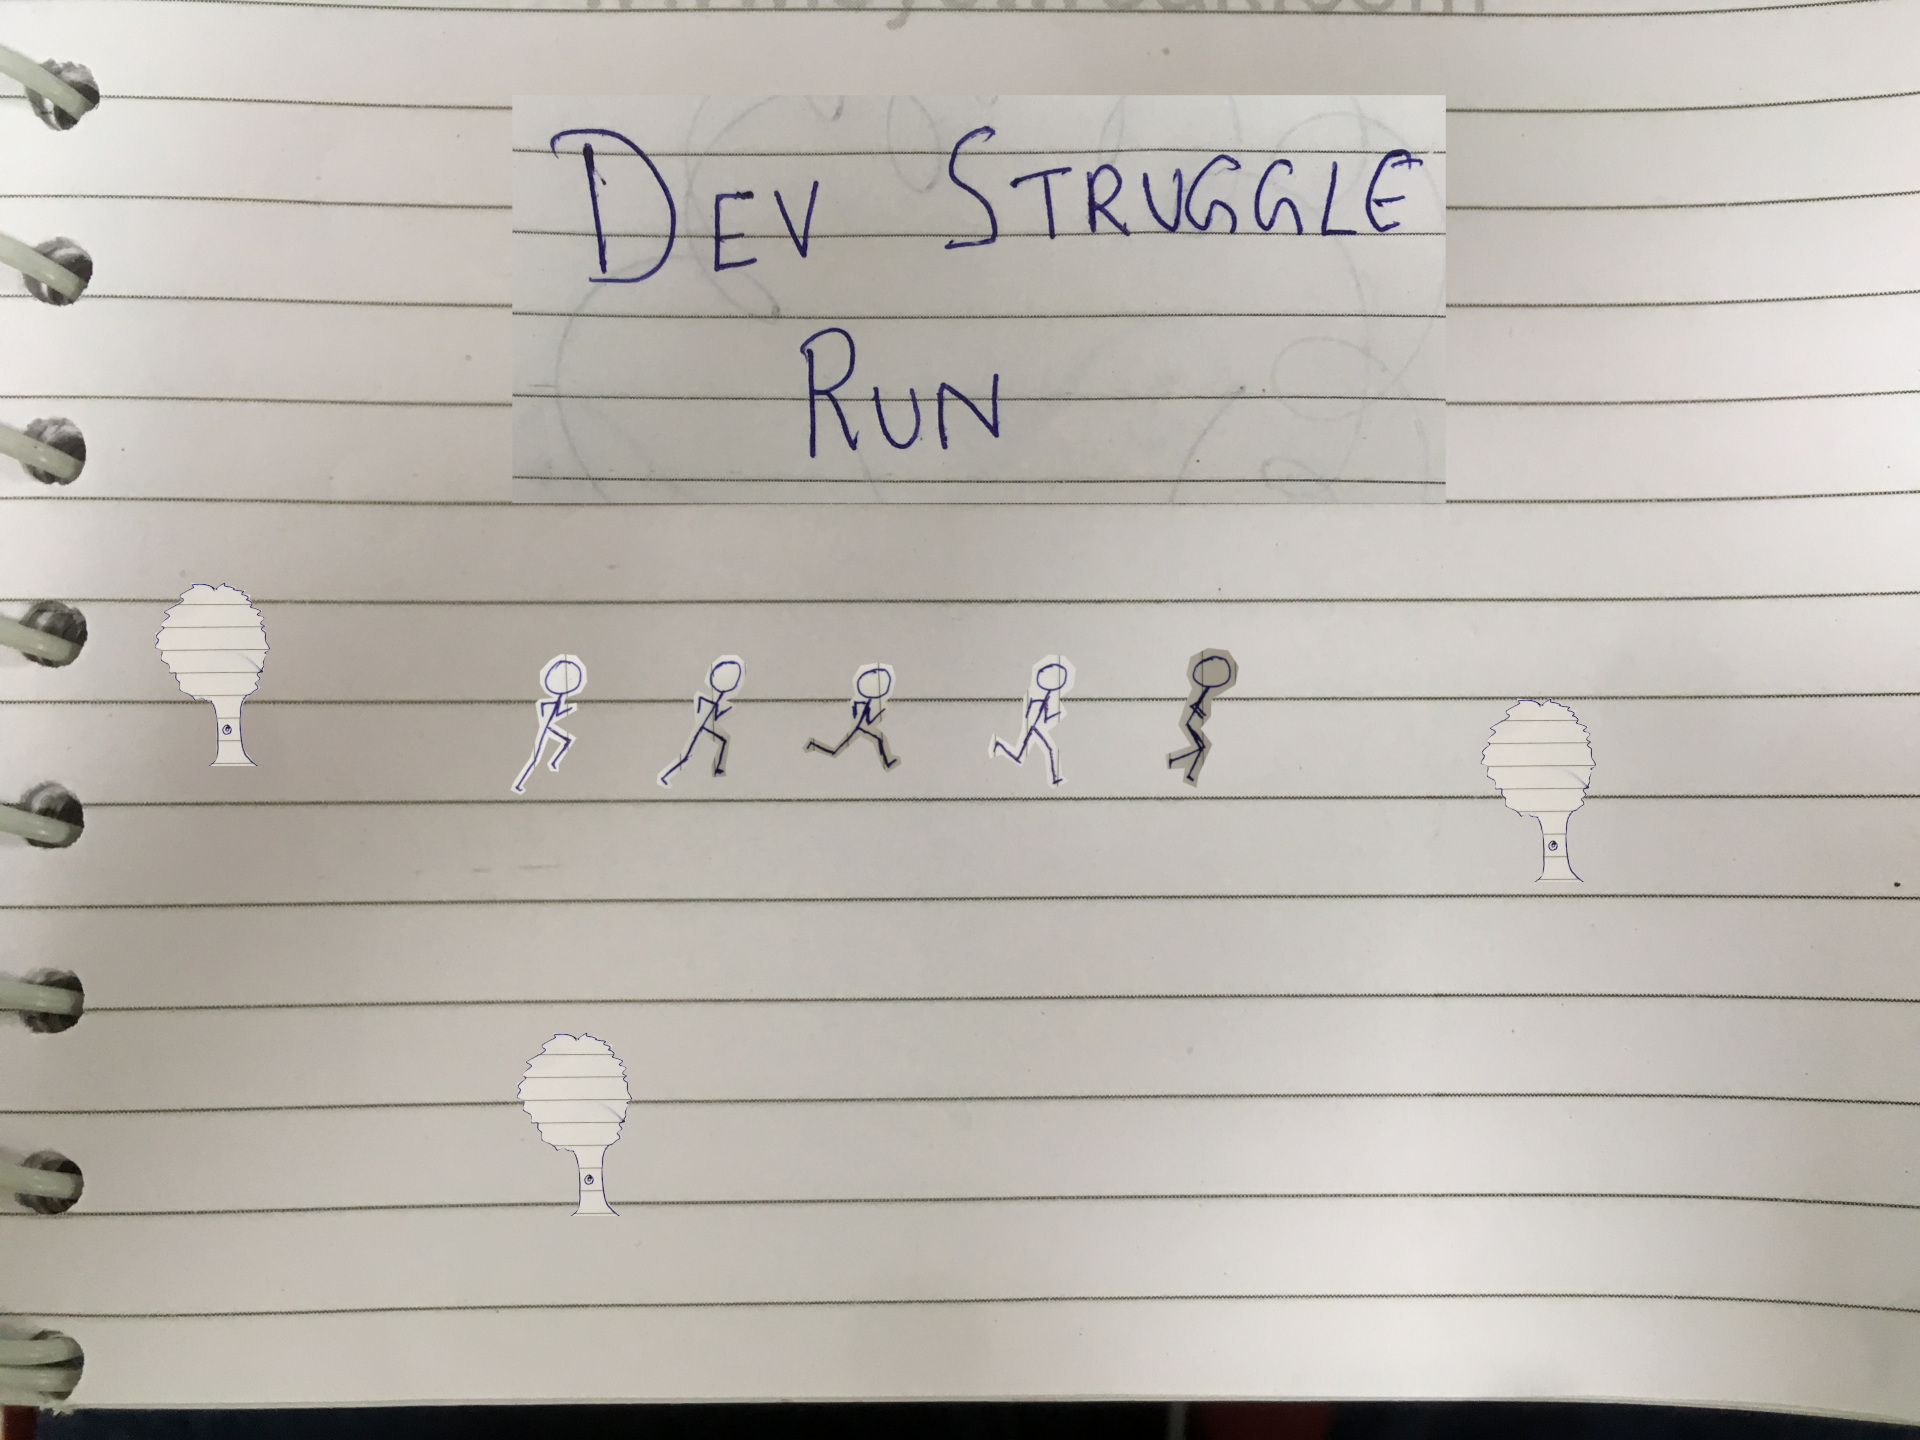 A Dev's Struggle